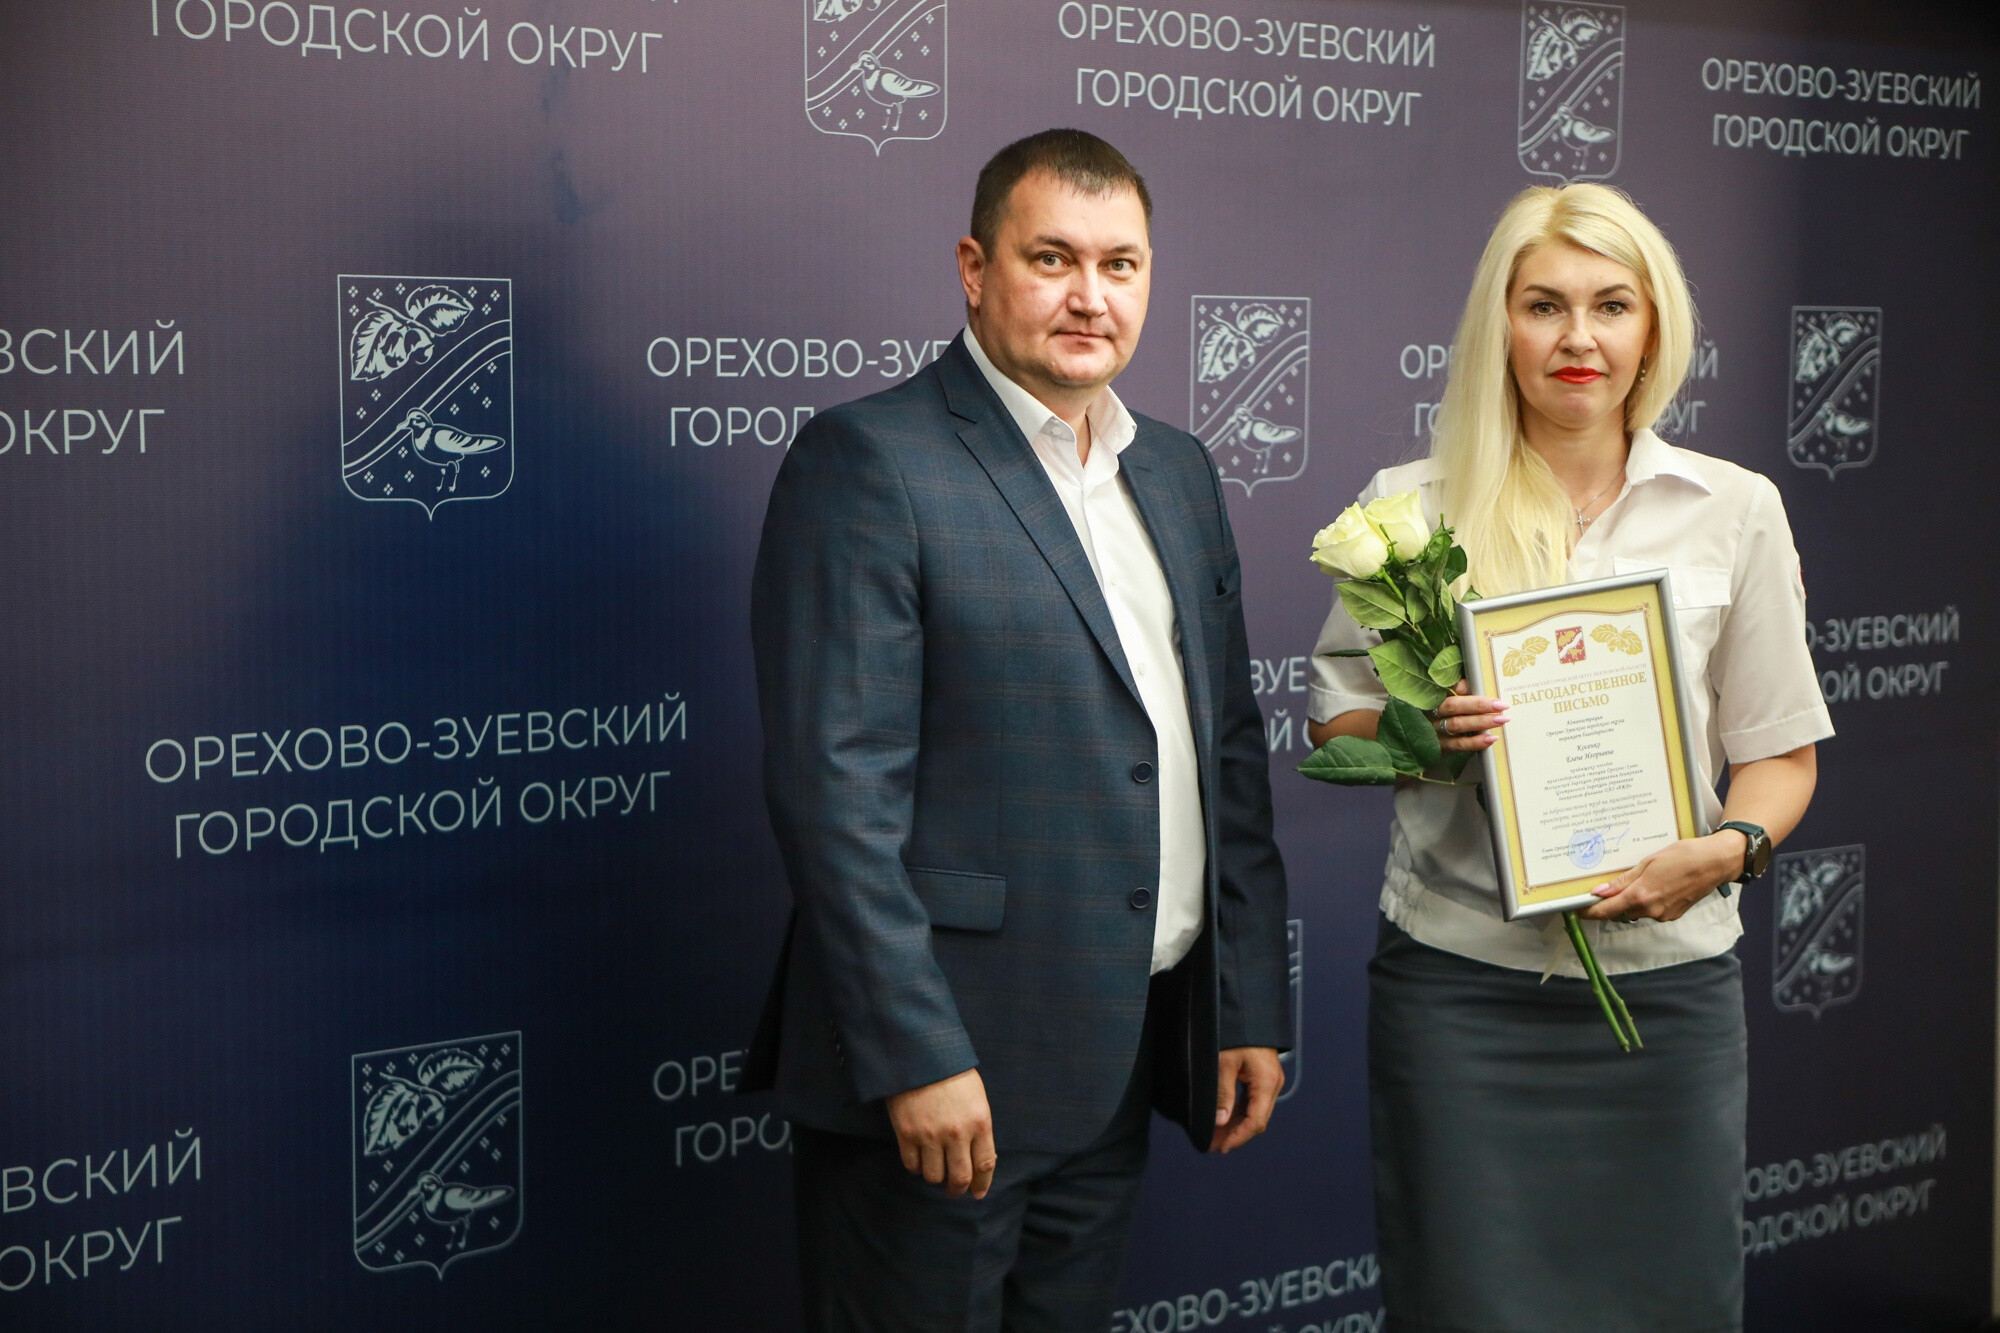 В преддверии празднования Дня железнодорожника лучшие сотрудники депо города Орехово-Зуево получили награды